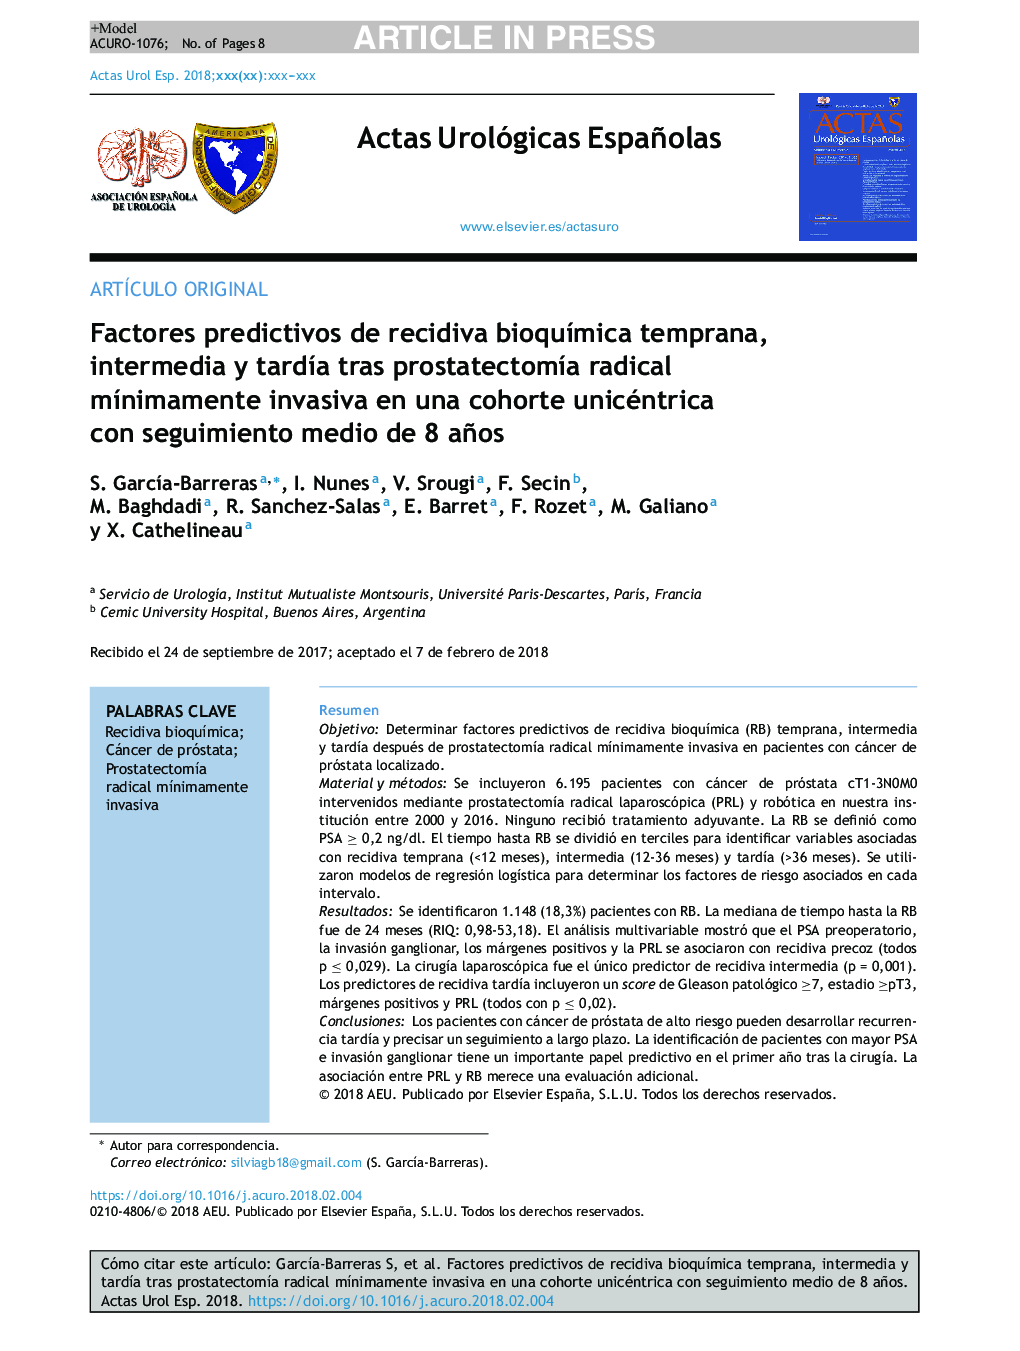 Factores predictivos de recidiva bioquÃ­mica temprana, intermedia y tardÃ­a tras prostatectomÃ­a radical mÃ­nimamente invasiva en una cohorte unicéntrica con seguimiento medio de 8 años